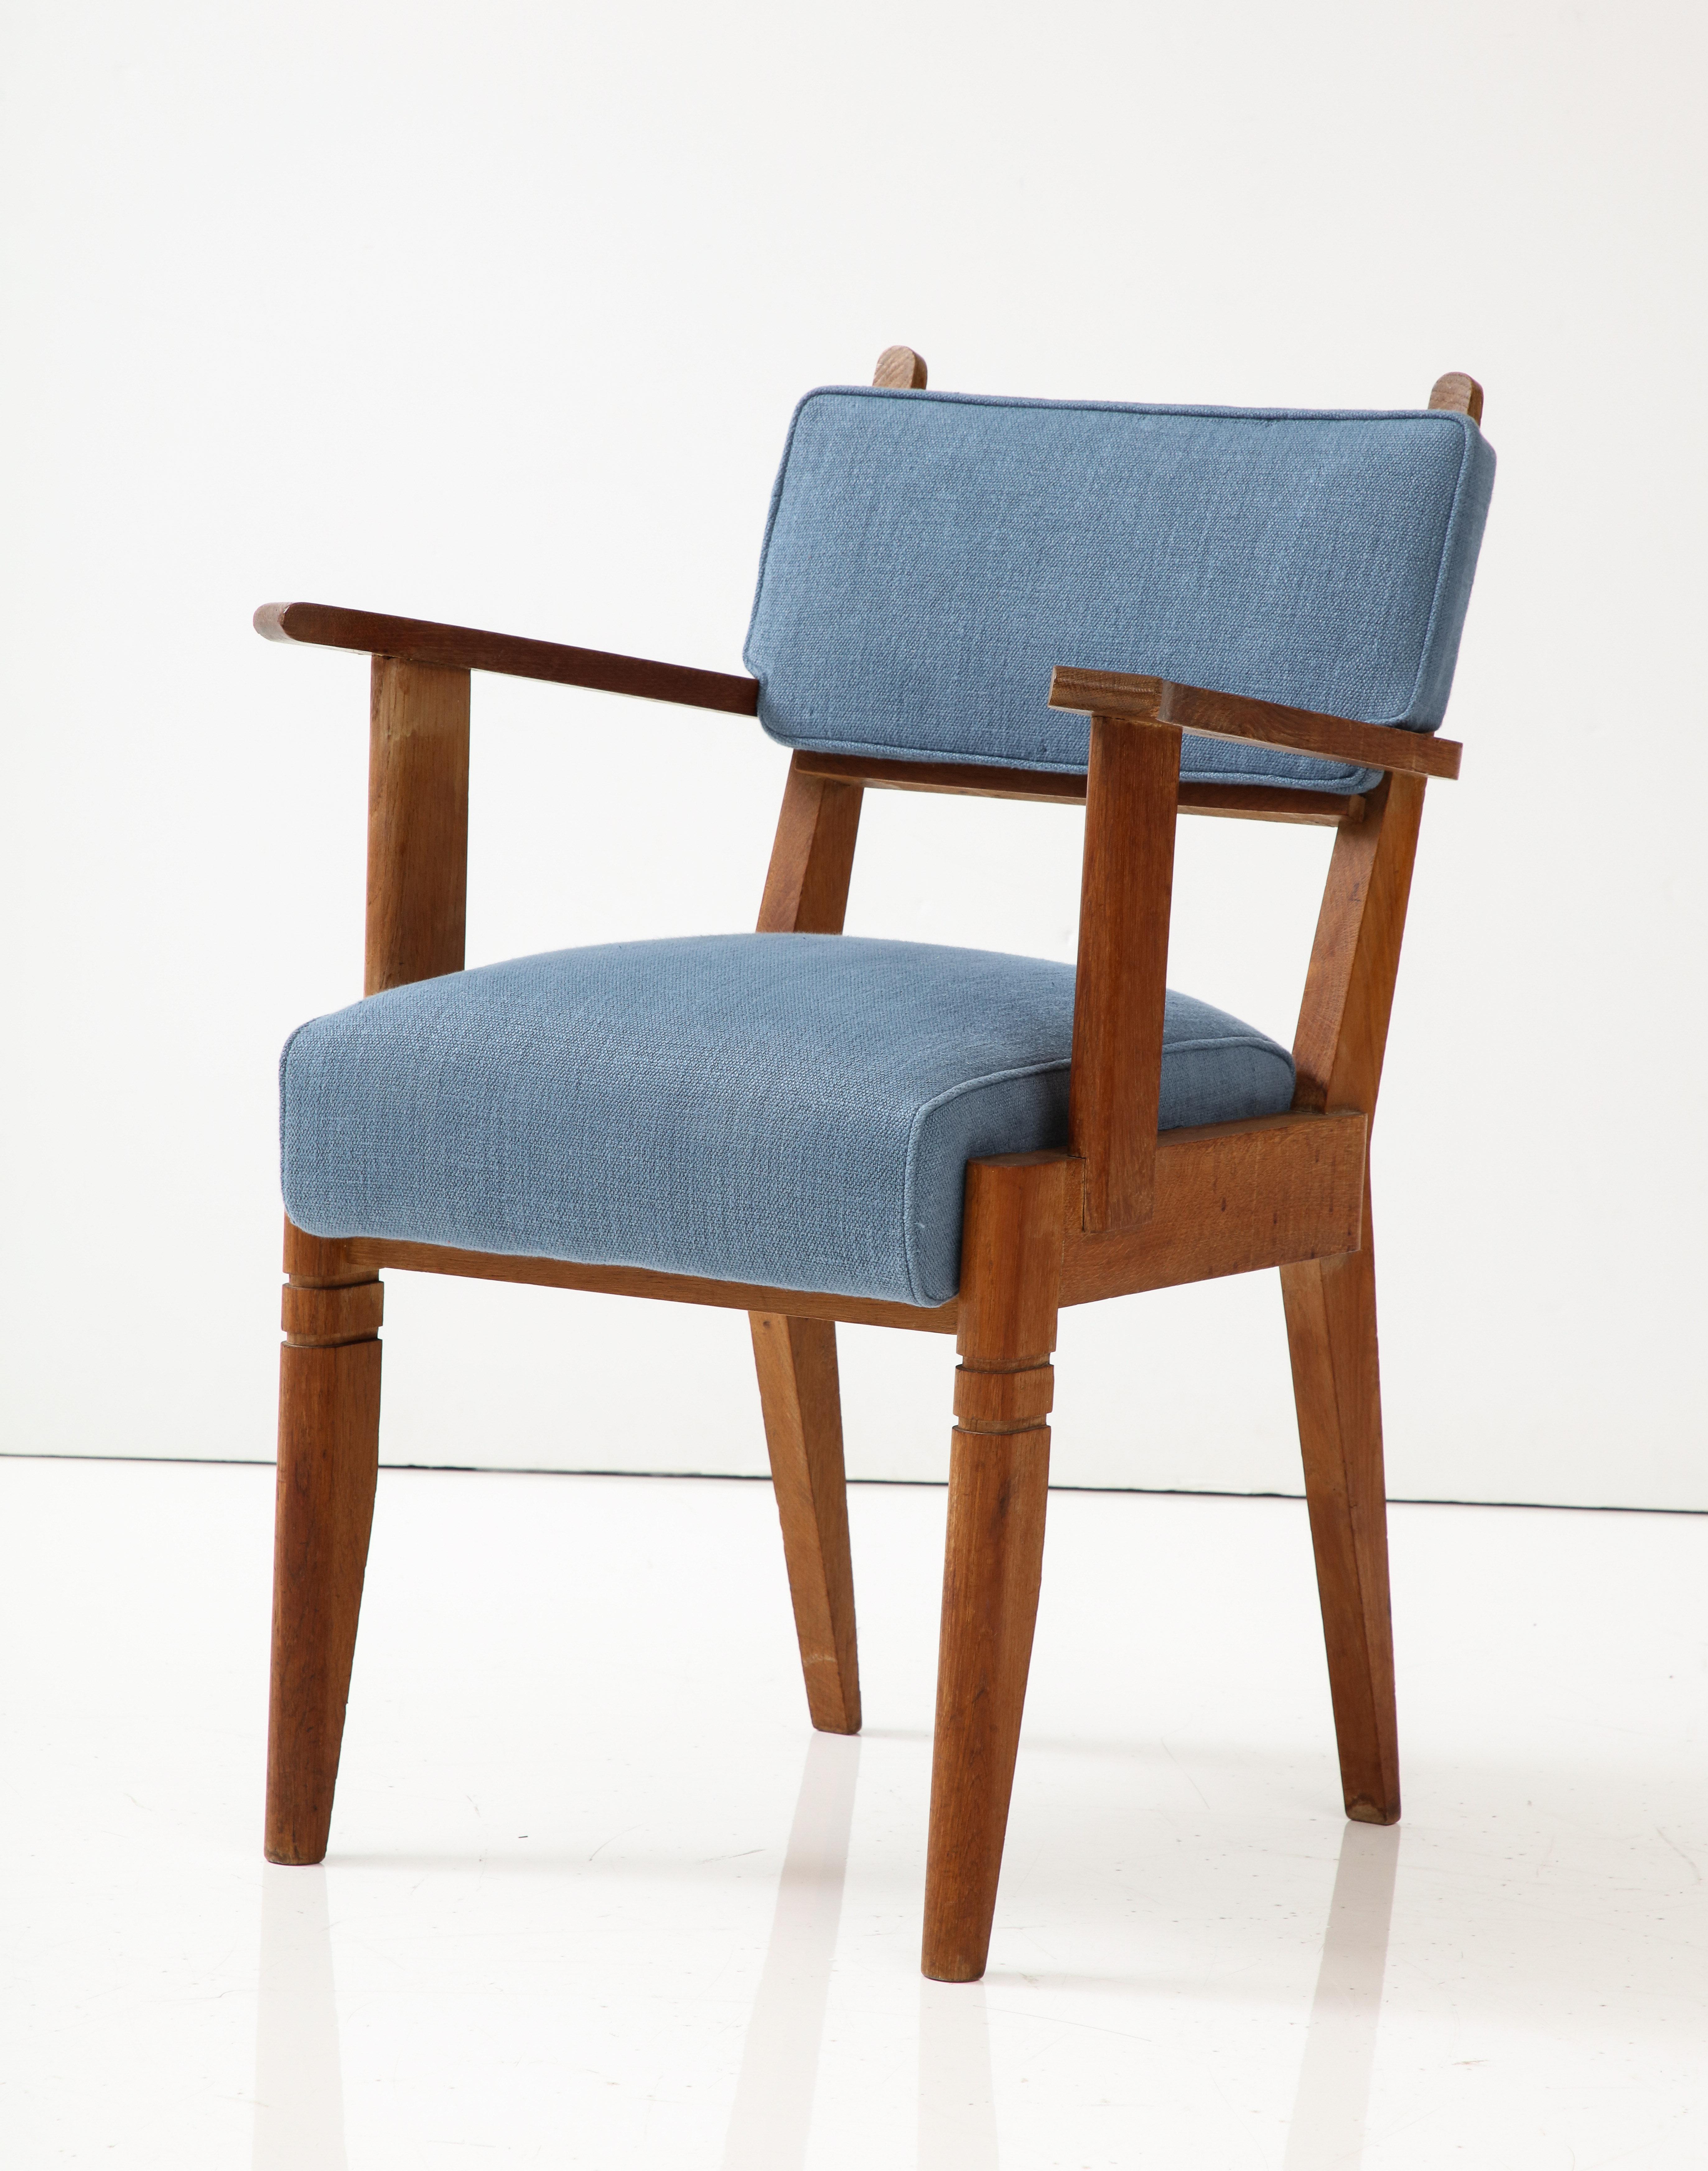 Deux autres chaises sont disponibles, revêtues d'un tissu en lin rouge rouille.

Chaise haute et élégante avec un rembourrage confortable et des lignes élégantes. Coussins neufs avec revêtement en lin bleu.